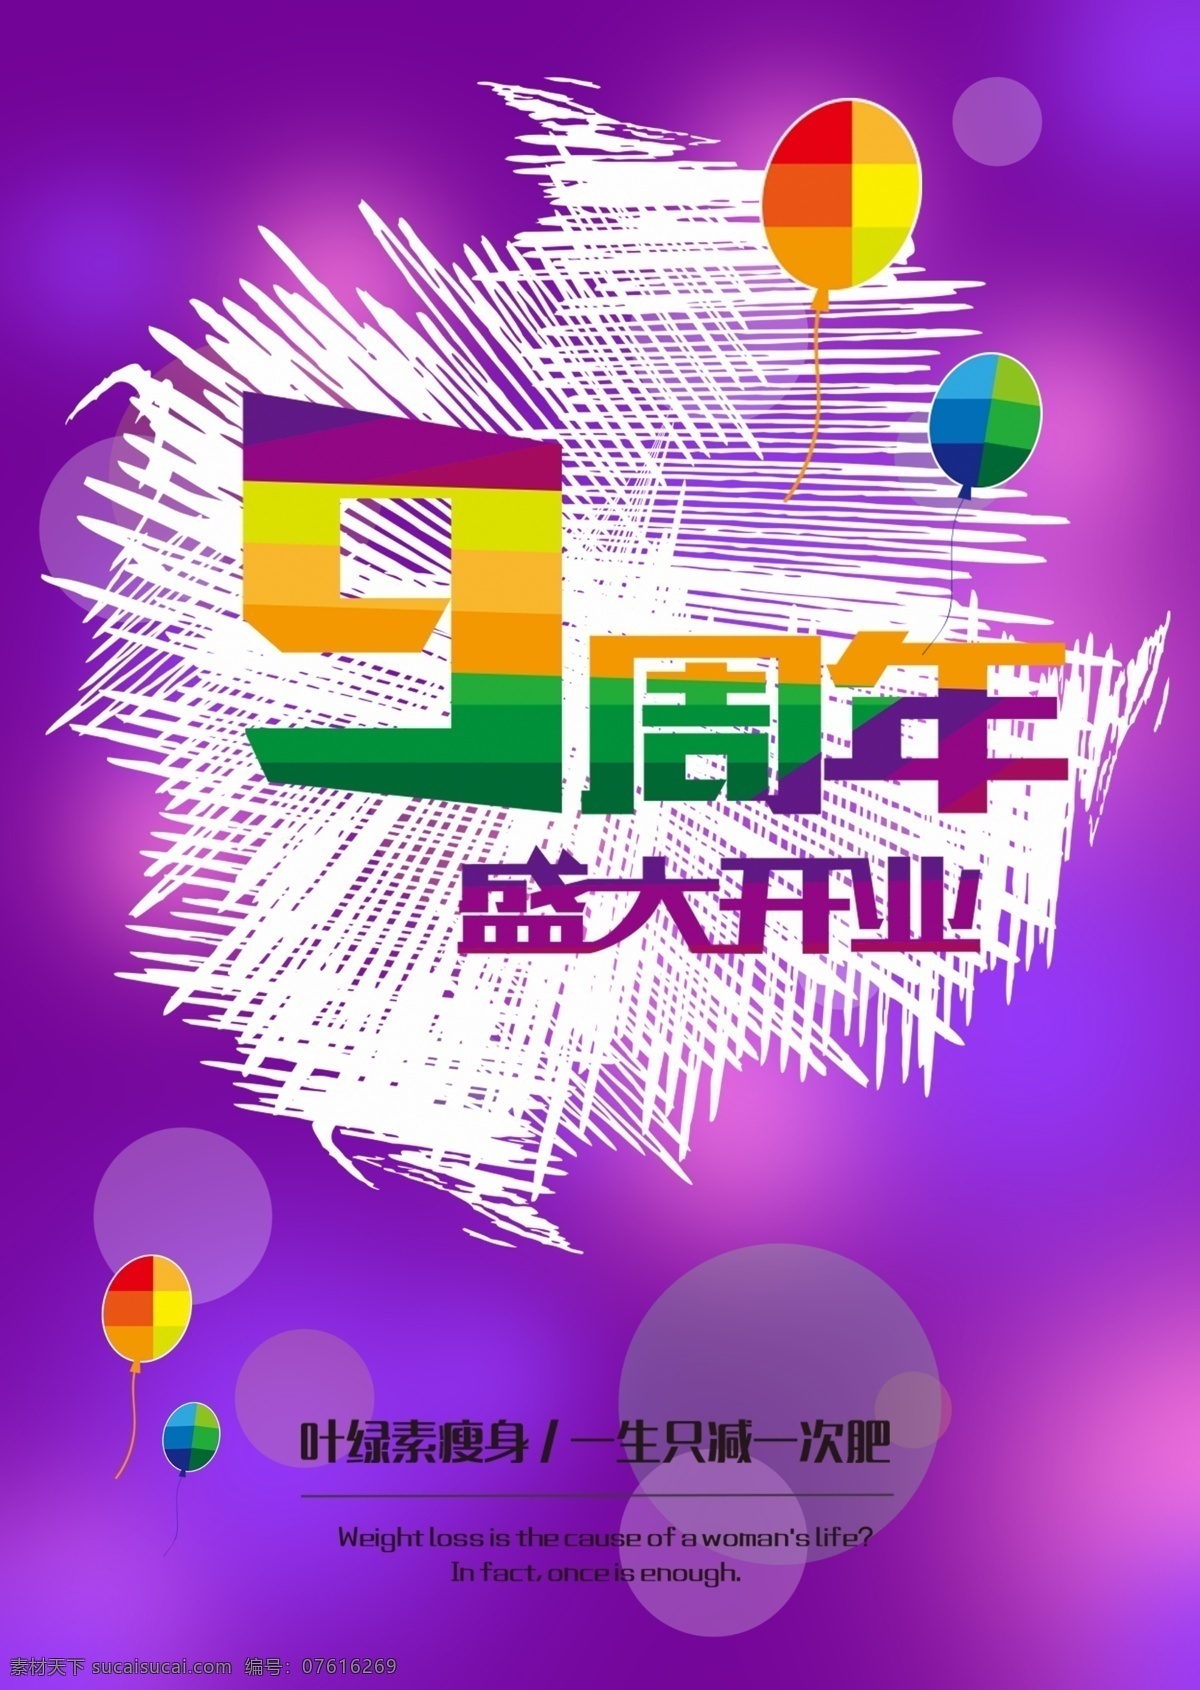 周年庆 盛大 开业 促销 宣传海报 9周年 周年庆典 盛大开业 店庆 宣传单 紫色背景 共享图